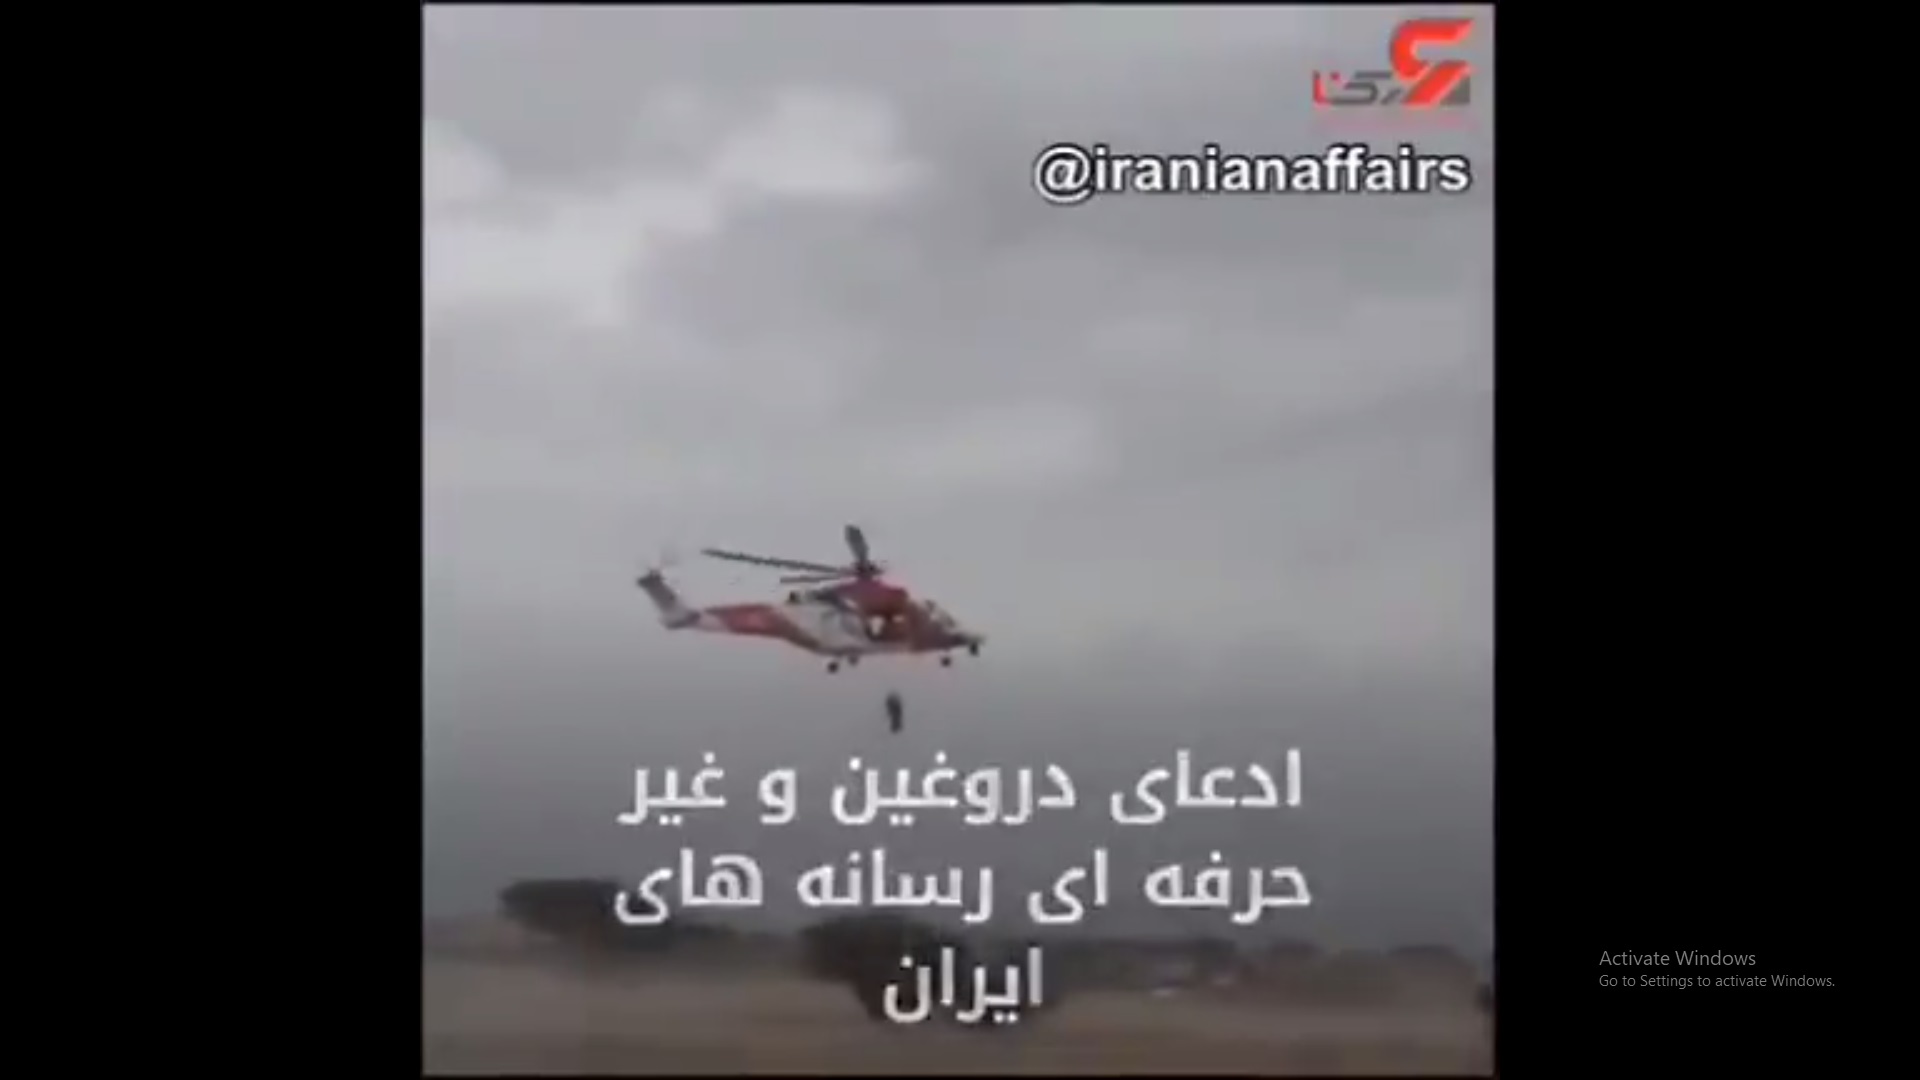 فيديو إنقاذ من الإمارات يفضح كذب الإعلام الإيراني!